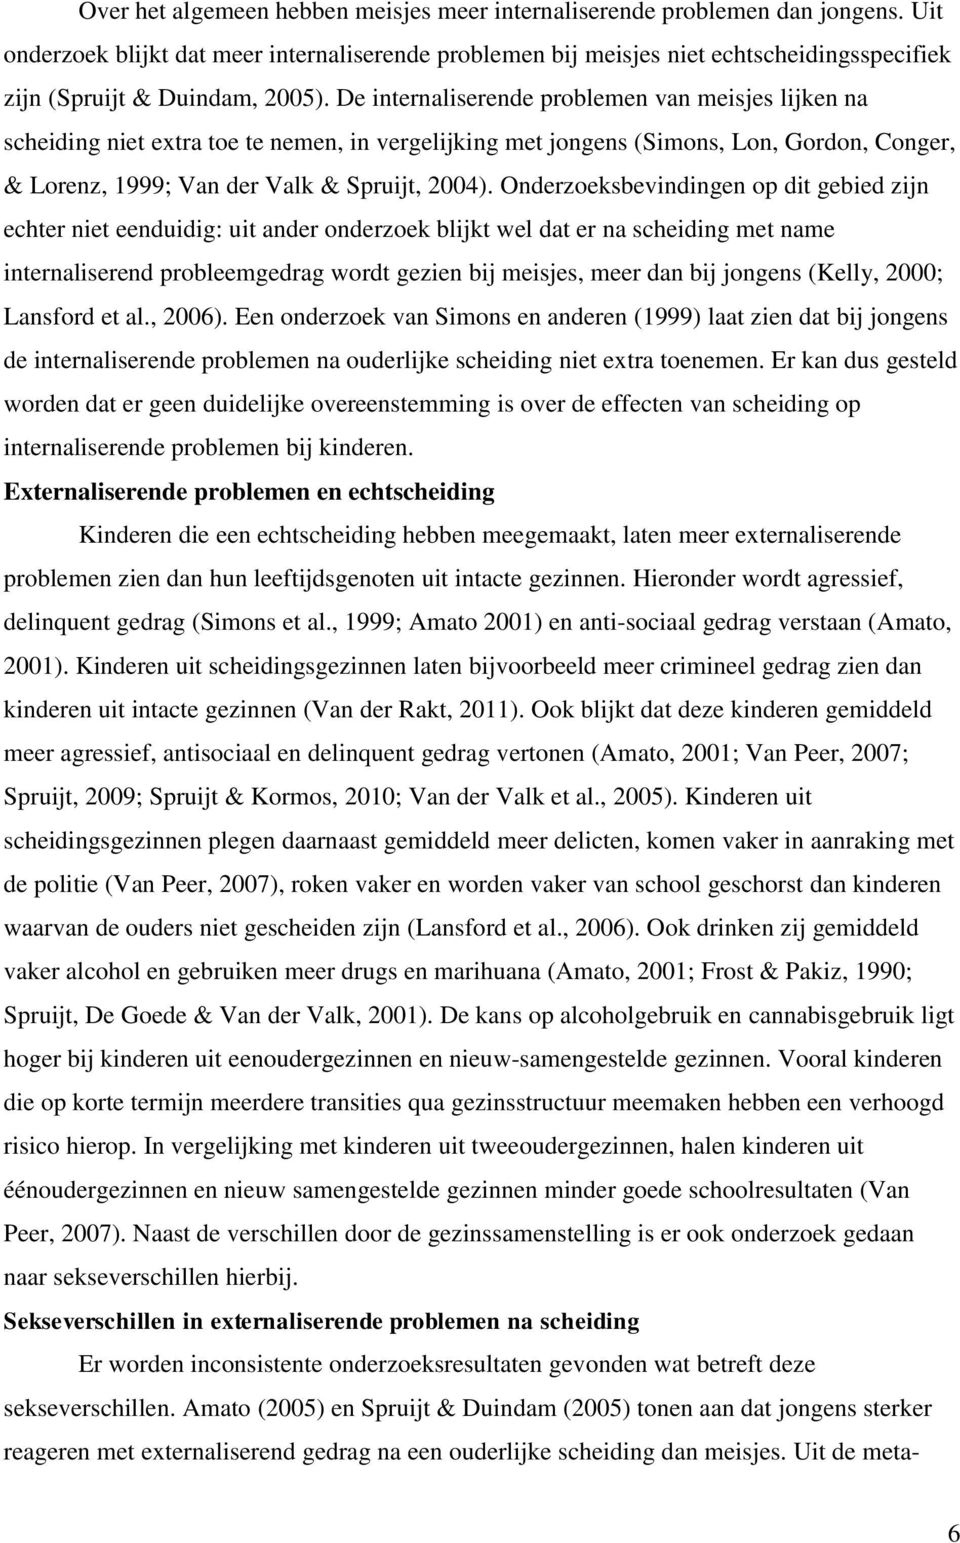 De internaliserende problemen van meisjes lijken na scheiding niet extra toe te nemen, in vergelijking met jongens (Simons, Lon, Gordon, Conger, & Lorenz, 1999; Van der Valk & Spruijt, 2004).